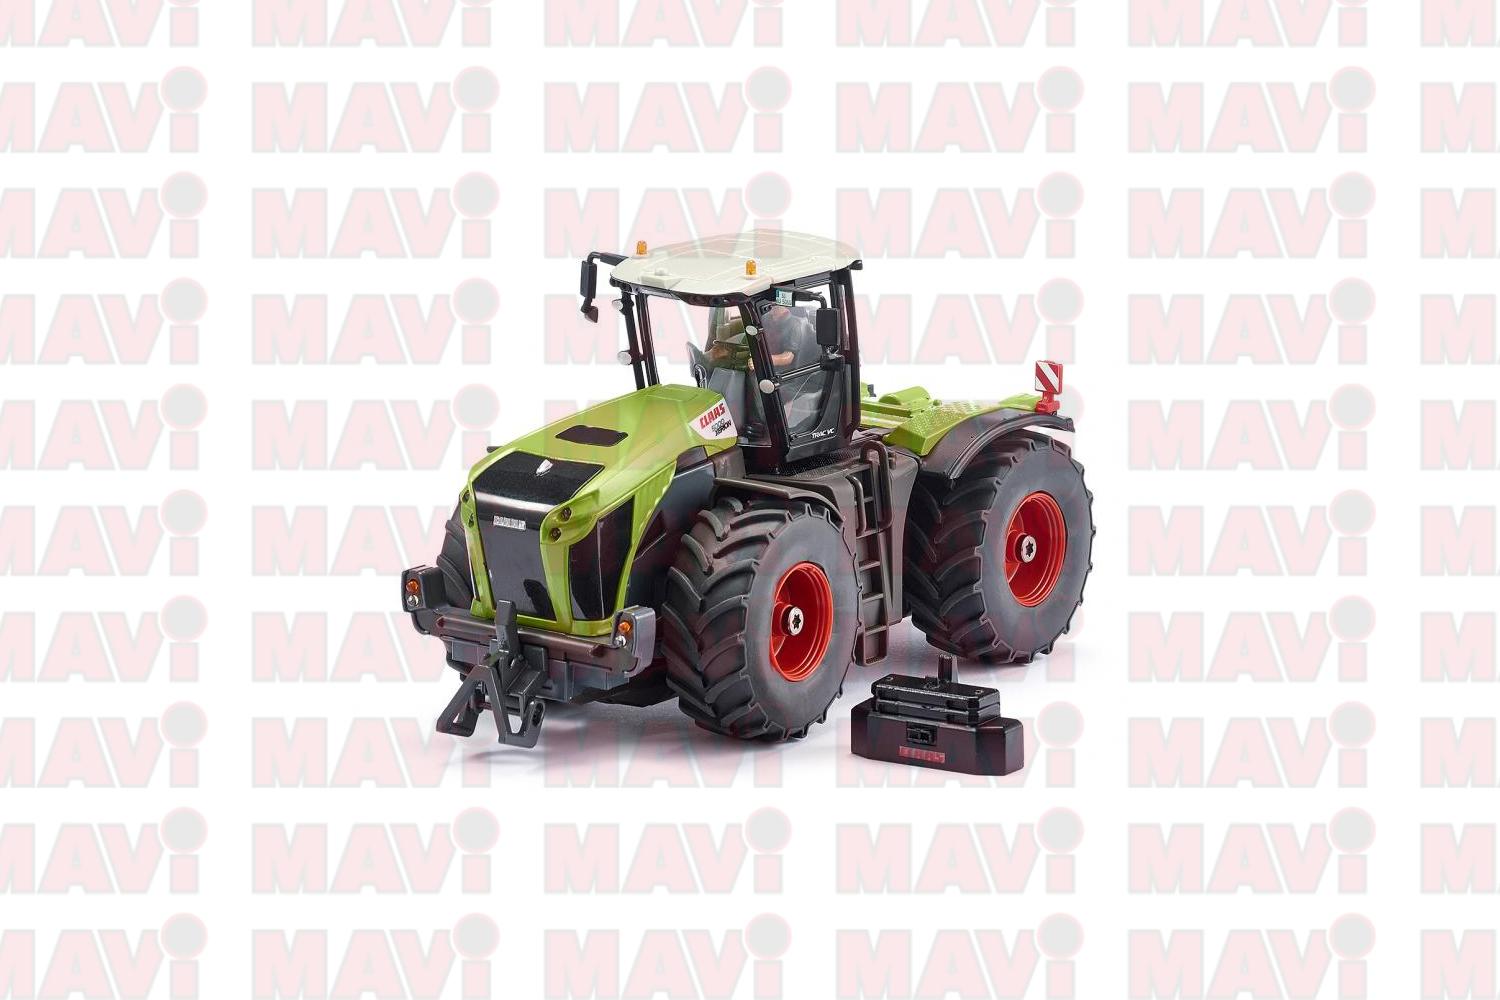 Jucarie Siku, tractor Claas Xerion 5000 Trac Vc cu aplicatie pentru control prin Bluetooth, 1:50, 256x111x128 mm # 6791